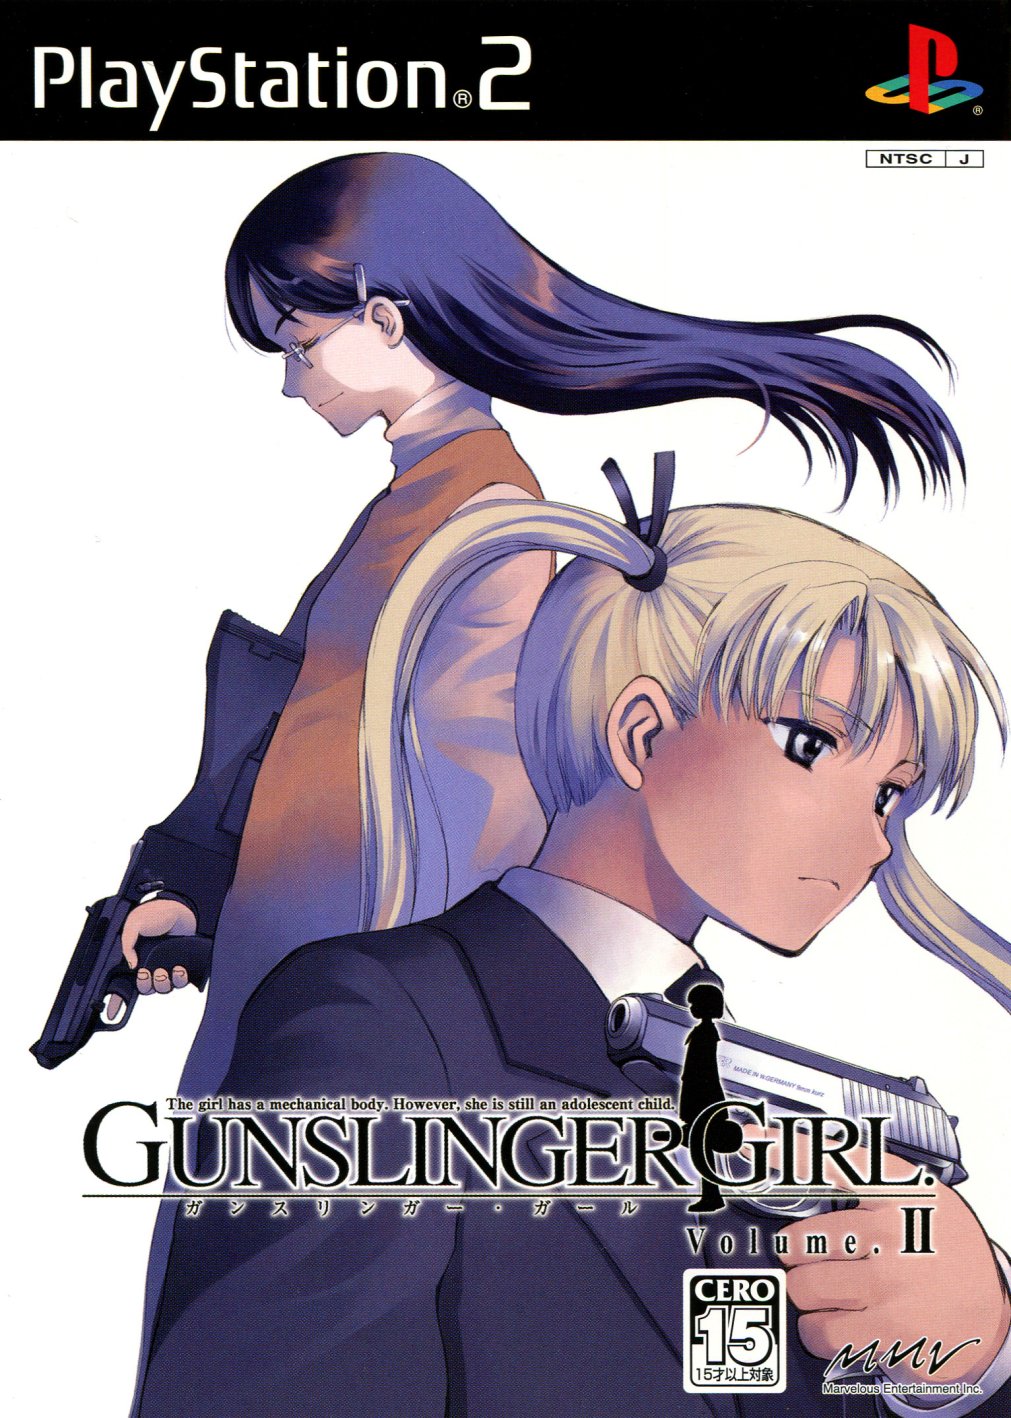 Gunslinger Girl: Volume II Images - LaunchBox Games Database